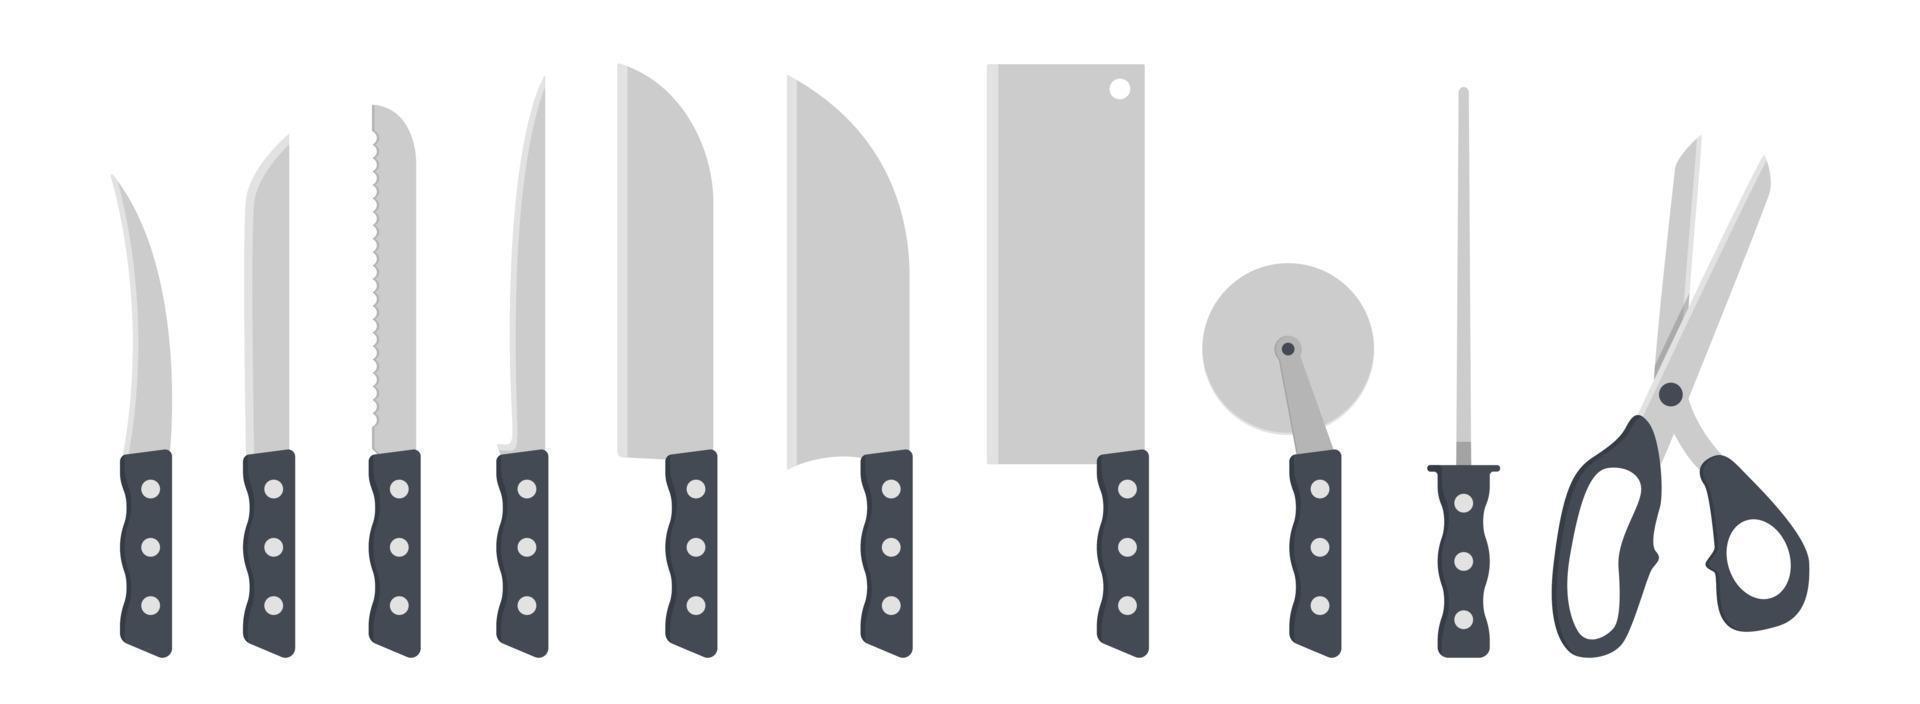 ensemble d'illustration vectorielle de clipart de couteaux de cuisine. couteau avec manche en plastique design plat. peler, légume, filet, santoku, couperet, coupe-pizza, aiguiseur de couteau, ciseaux. logo d'icône de concept de cuisine vecteur